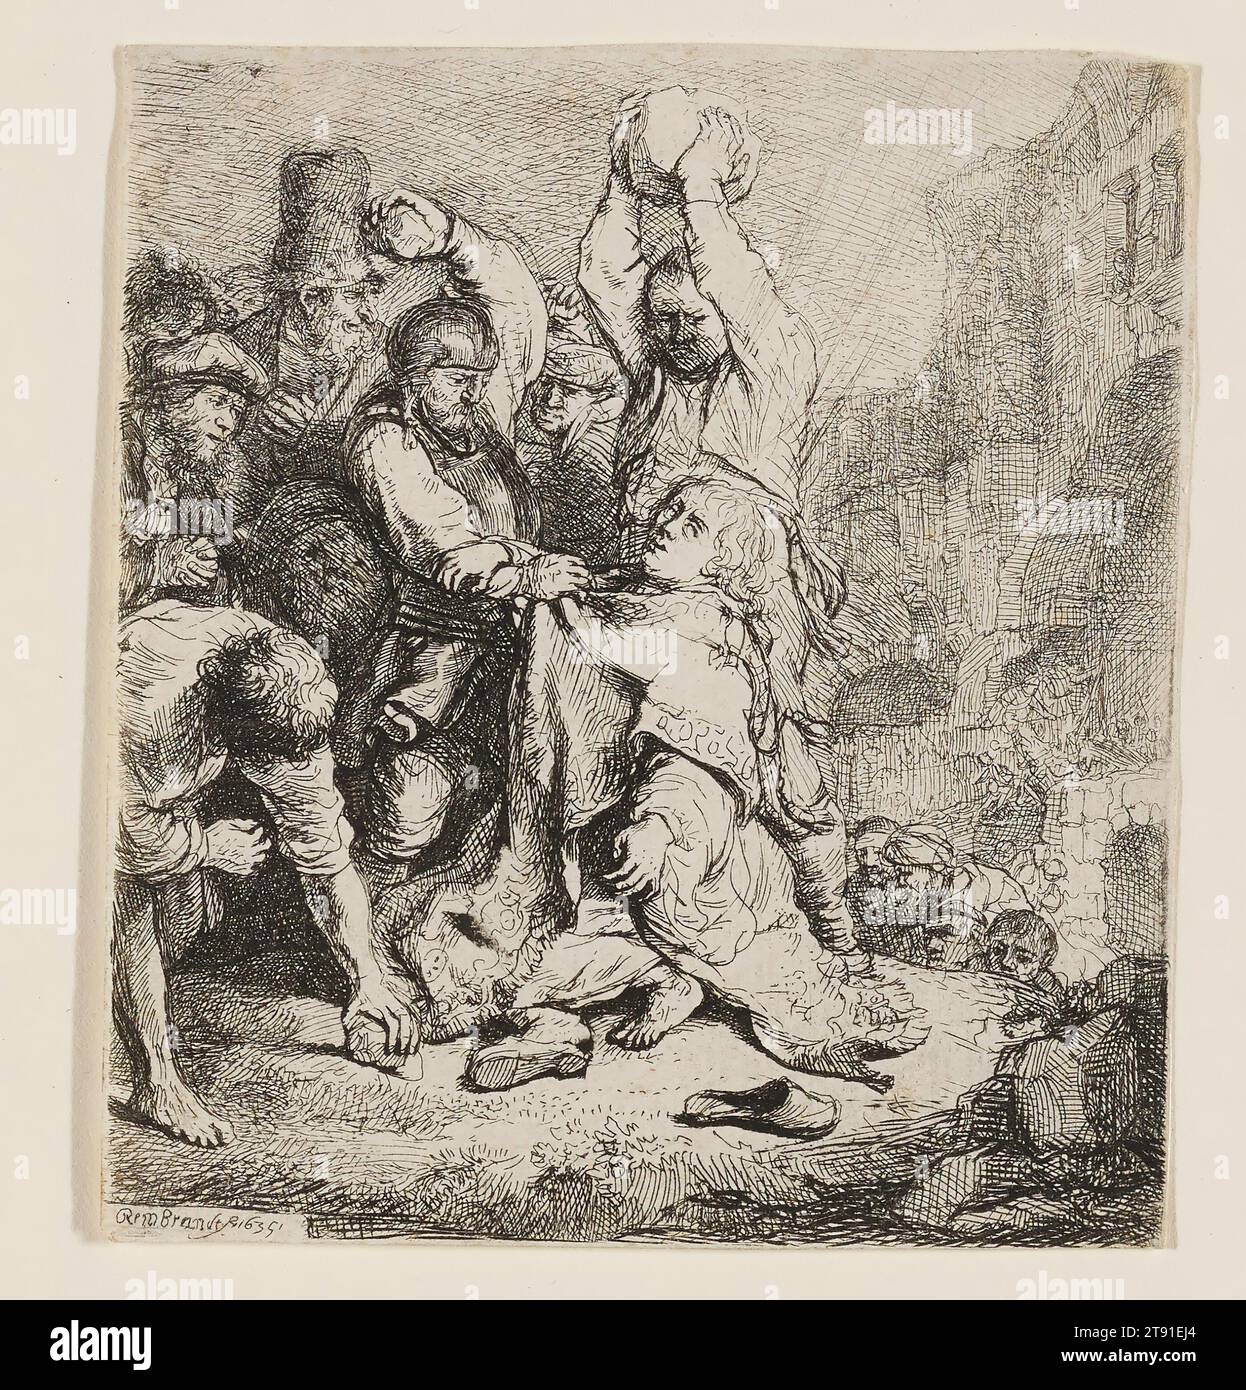 La lapidazione di St. Stephen, 1635, Rembrandt Harmensz. Van Rijn, olandese, 1606–1669, 3 3/4 x 3 3/8 poll. (9,5 x 8,5 cm) (foglio), Etching, Paesi Bassi, XVII secolo, Rembrandt scelse il martirio di Santo Stefano come soggetto del suo primo dipinto, completato nel 1625 all'età di 19 anni. Circa dieci anni dopo, riprende il tema in questo drammatico ritratto inciso dell'omicidio del santo per lapidazione. Secondo gli atti degli Apostoli della Bibbia, Stefano era un discepolo di Gesù e diacono nella chiesa paleocristiana a cui era stato assegnato il compito di distribuire cibo e carità alle vedove e ai bisognosi Foto Stock